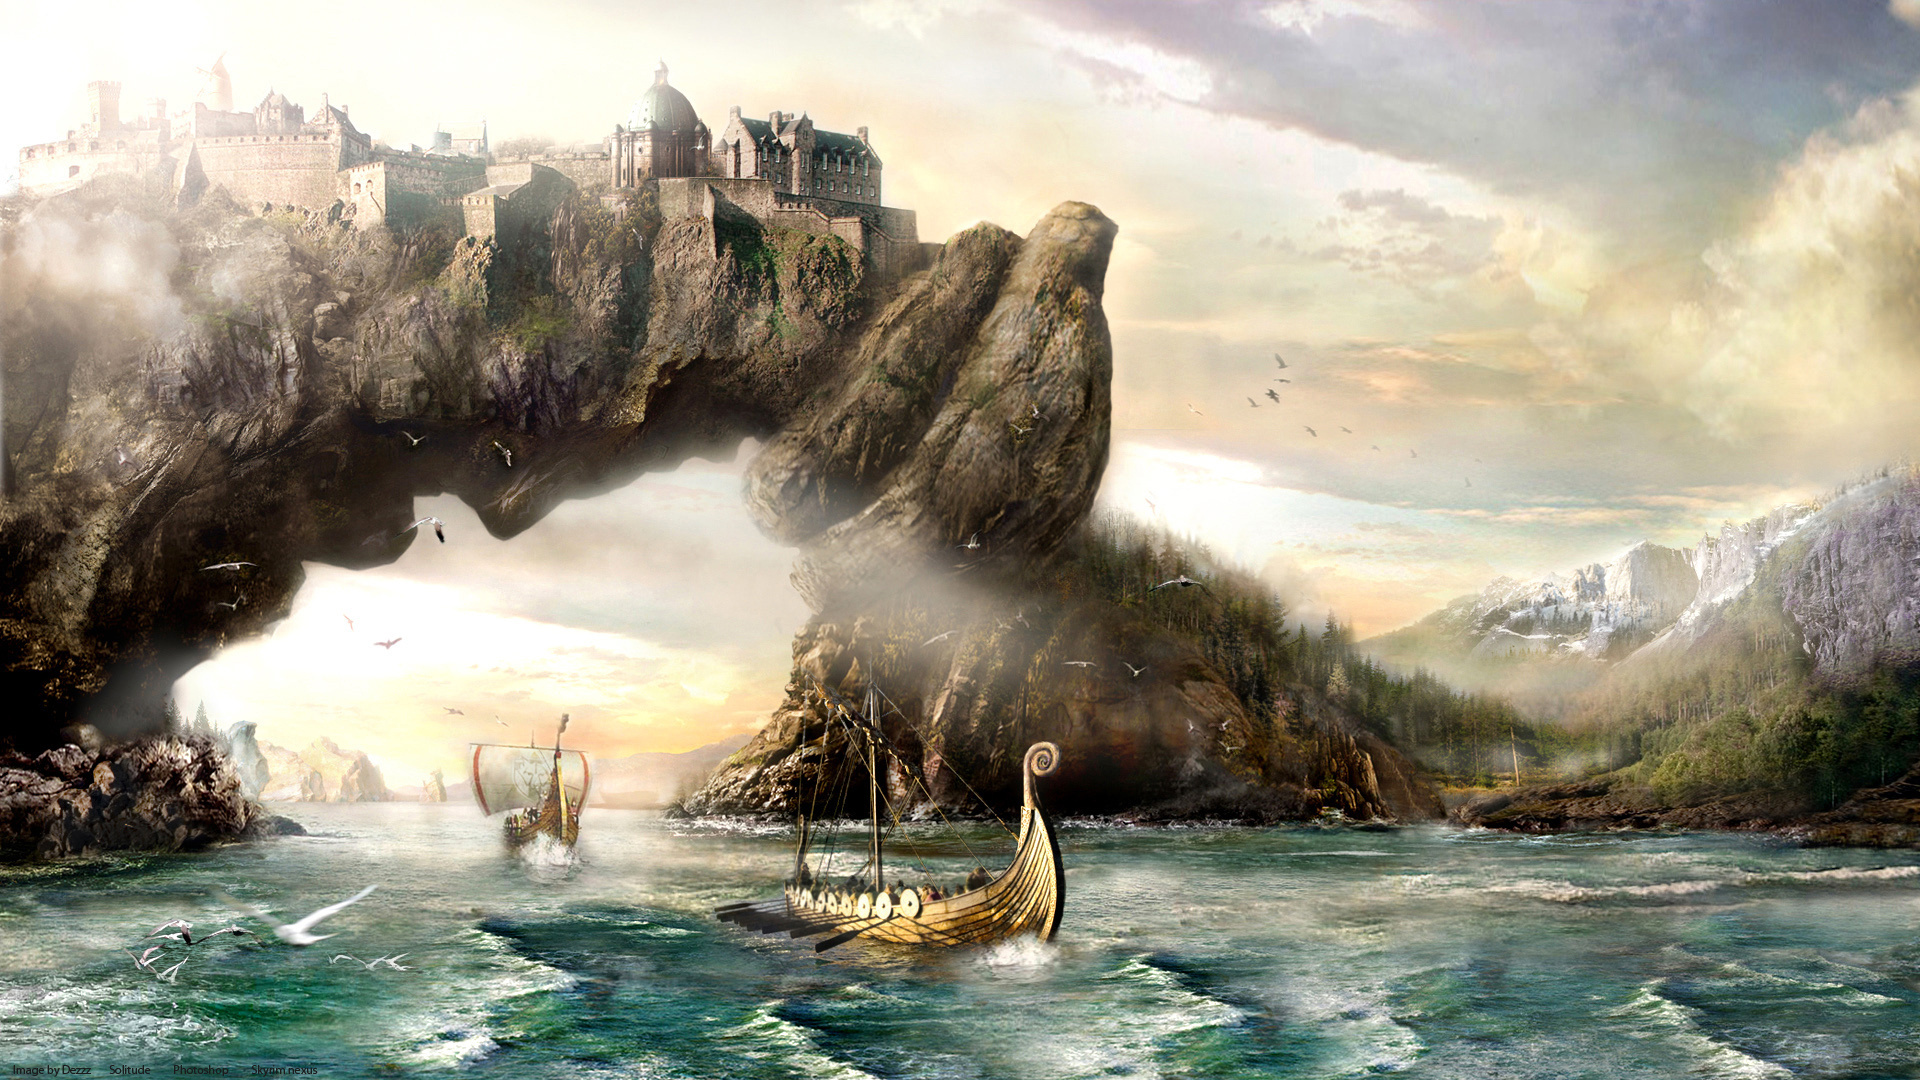 Vikings Sailing Boats Ships Landscapes Paintings Mountains Wallpaper